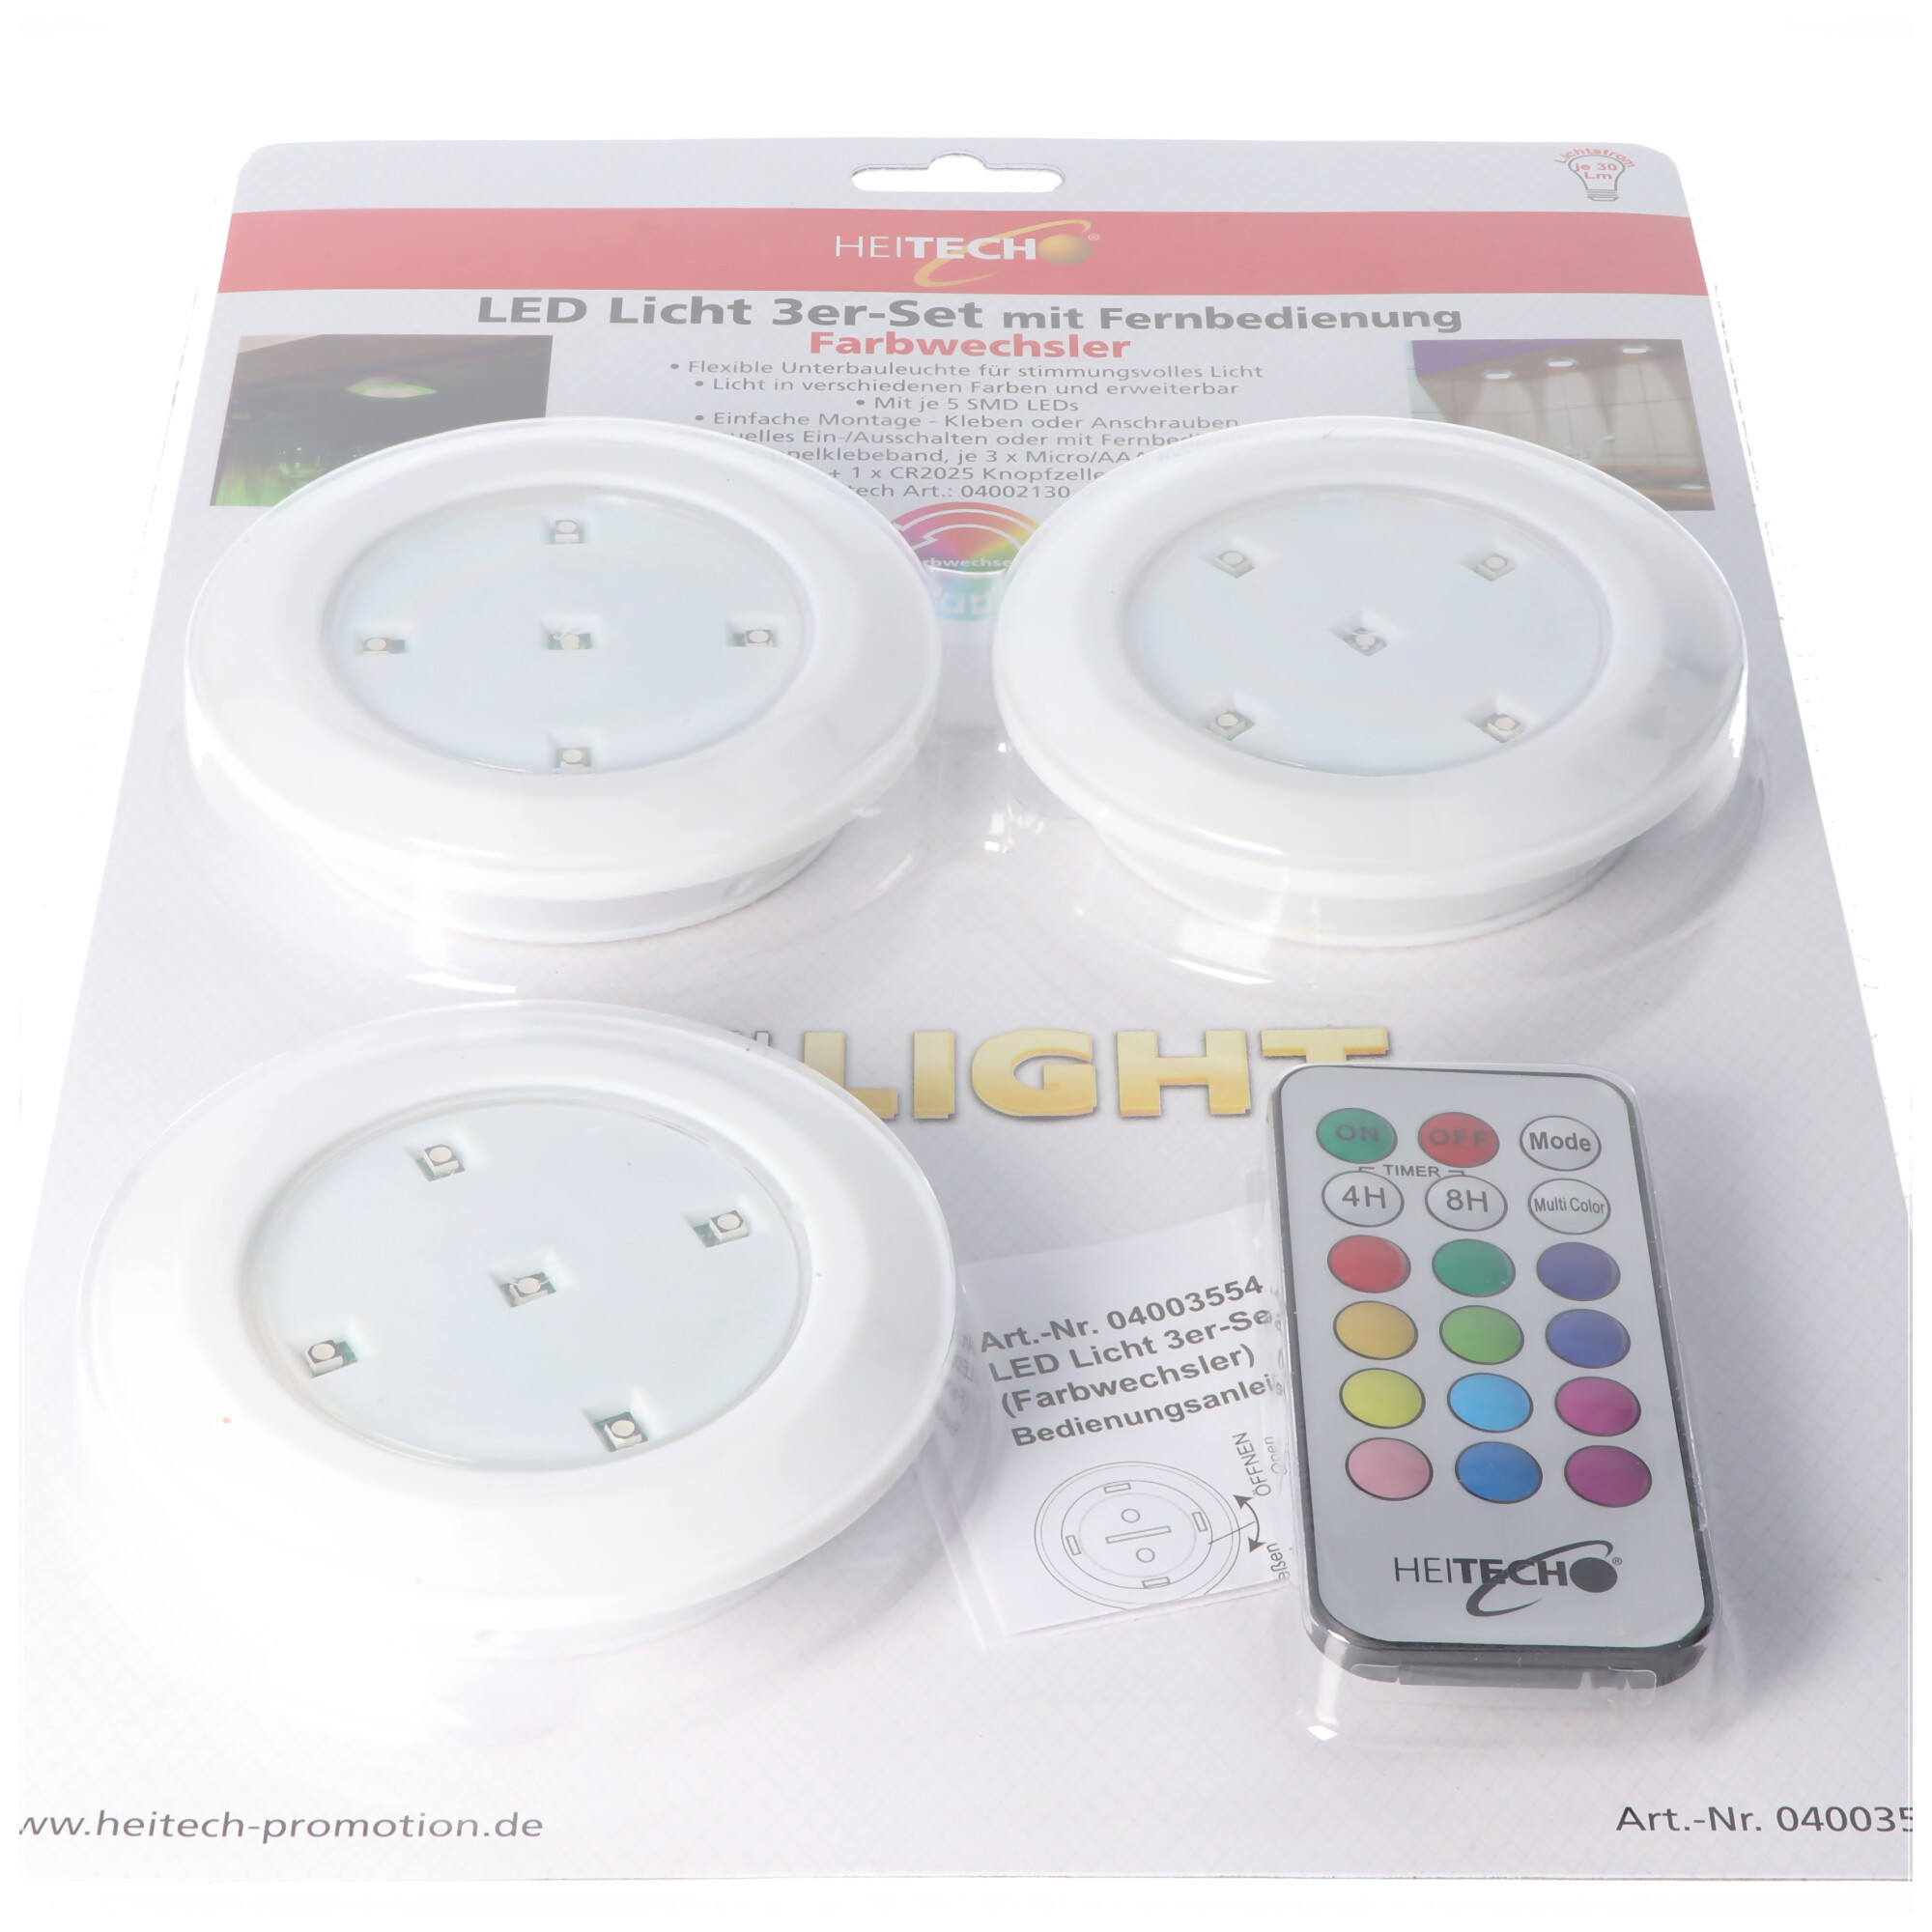 LED Licht 3er-Set mit Fernbedienung, flexible Unterbauleuchte mit Licht in verschiedenen Farben, inklusive 3x AAA Batterien und 1x CR2025 Batterie